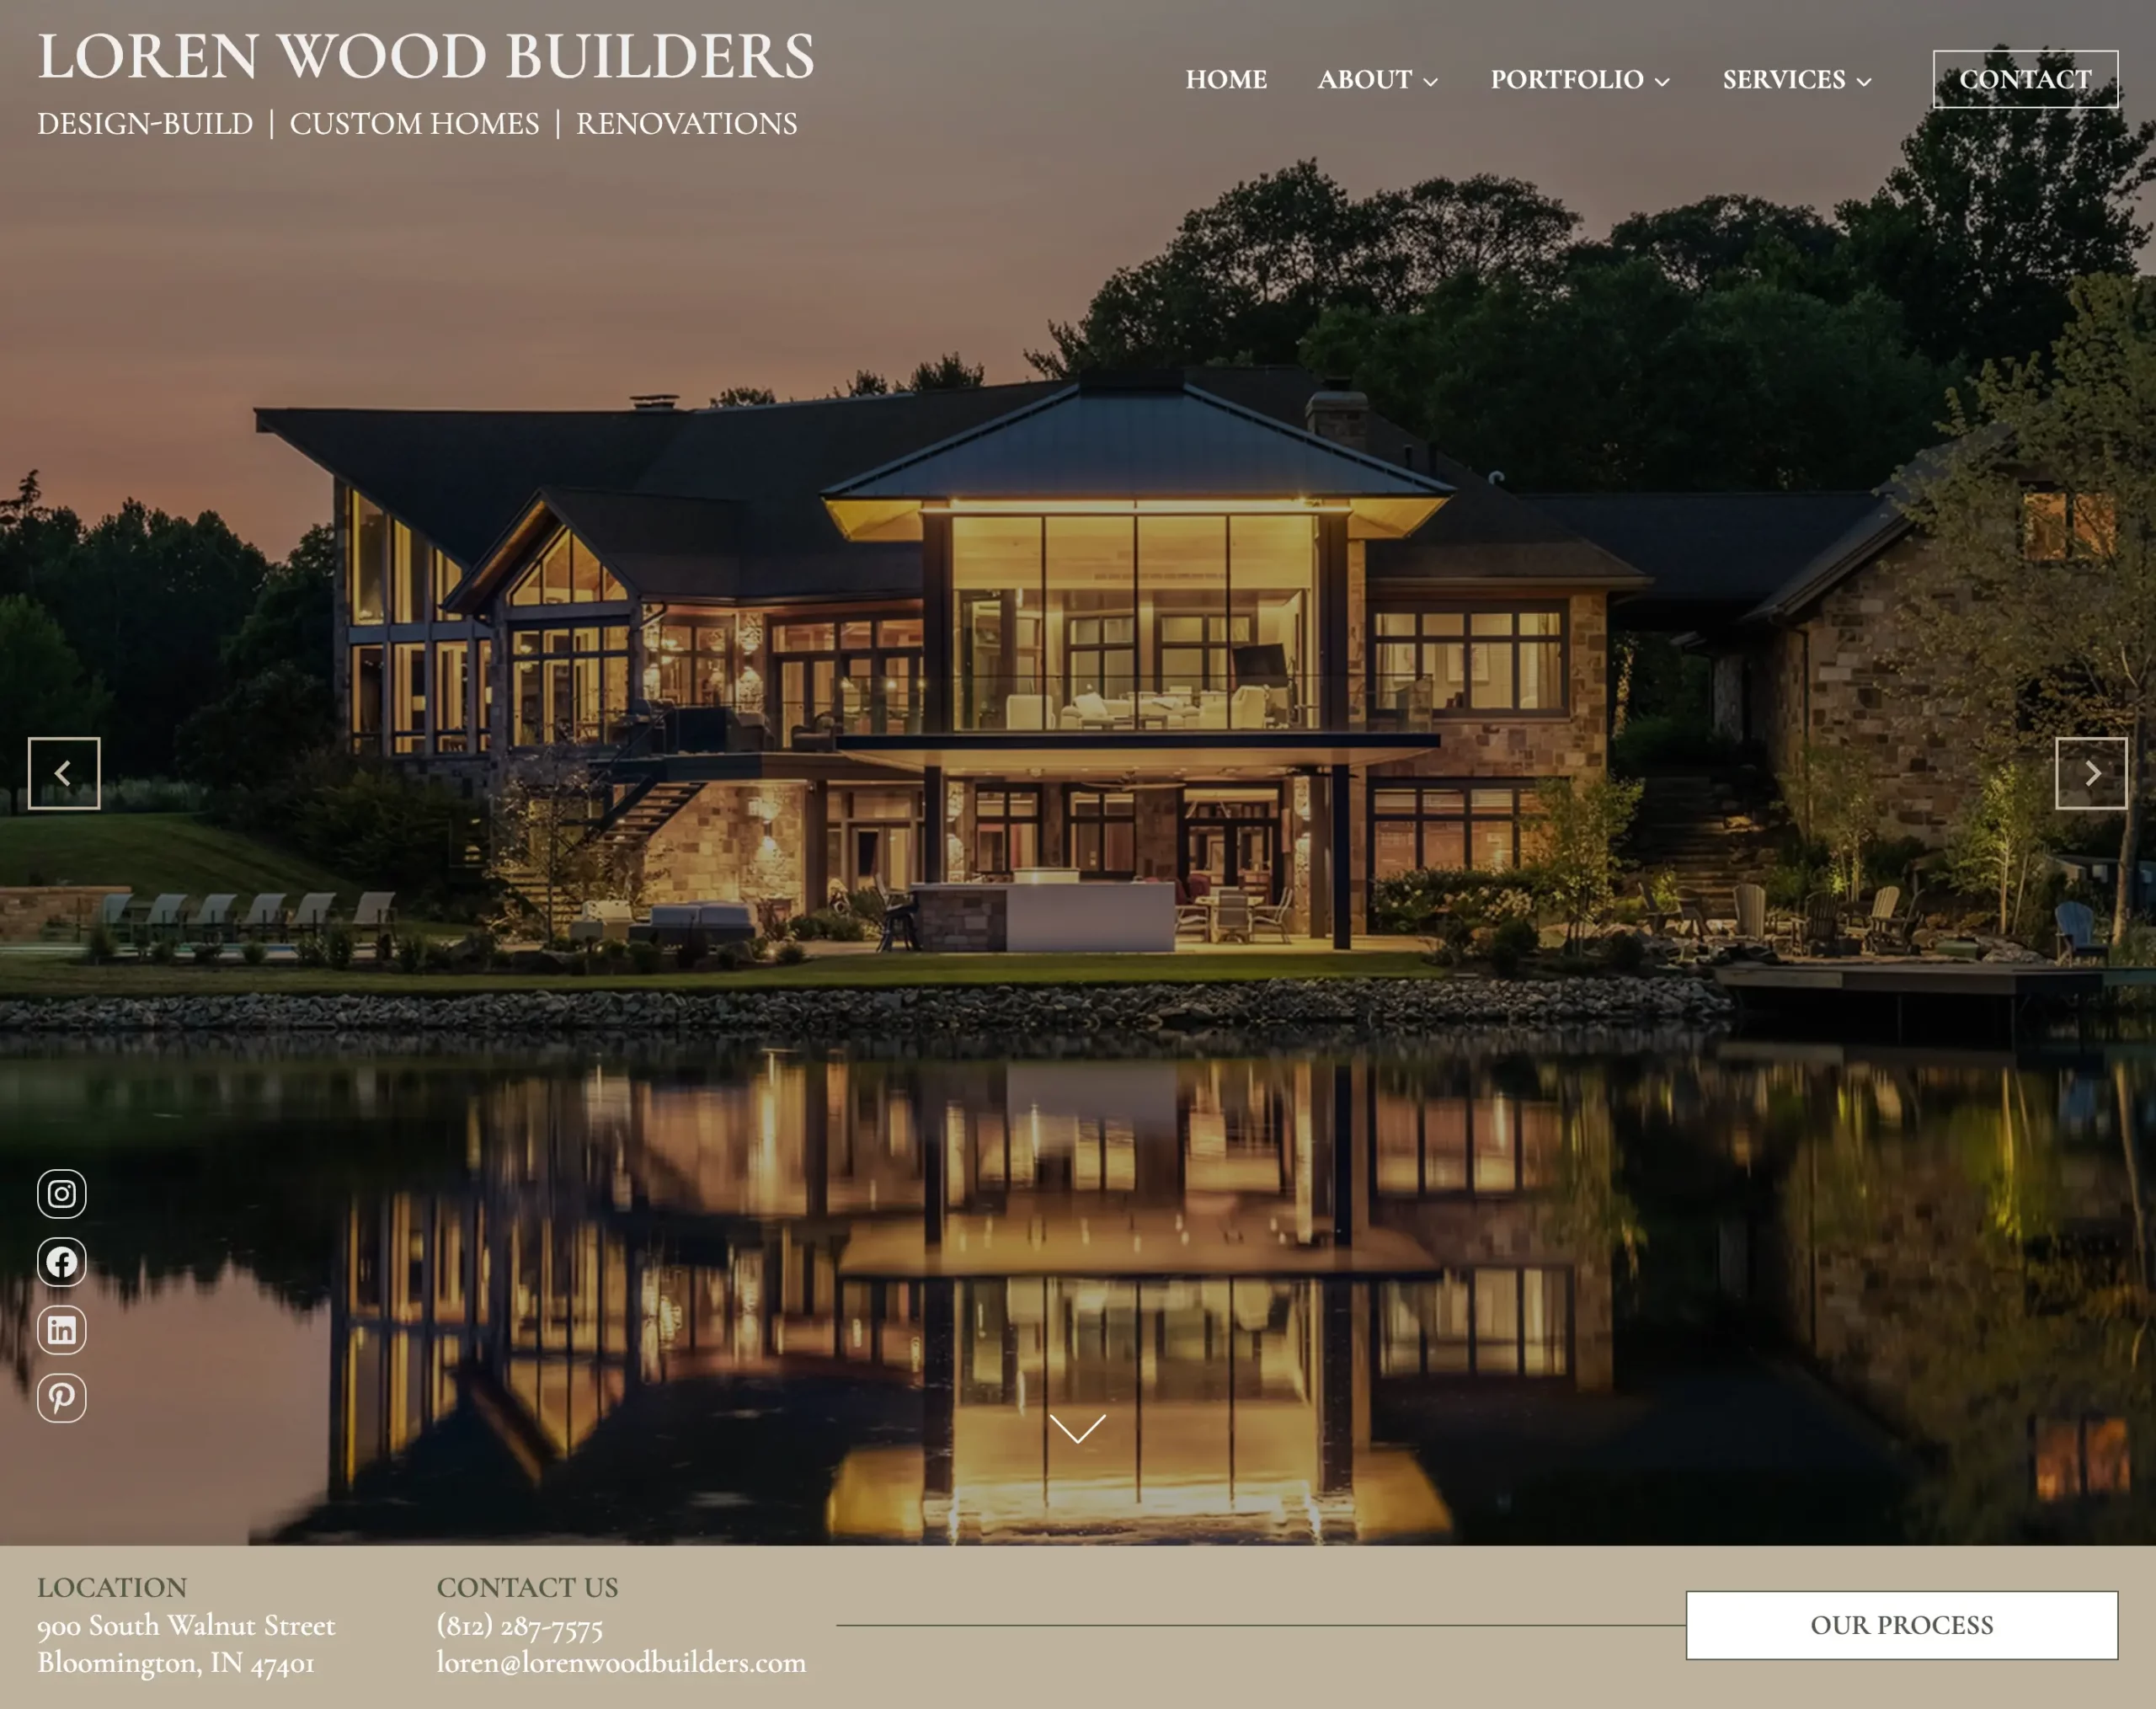 Loren Wood Builders Website Redesign